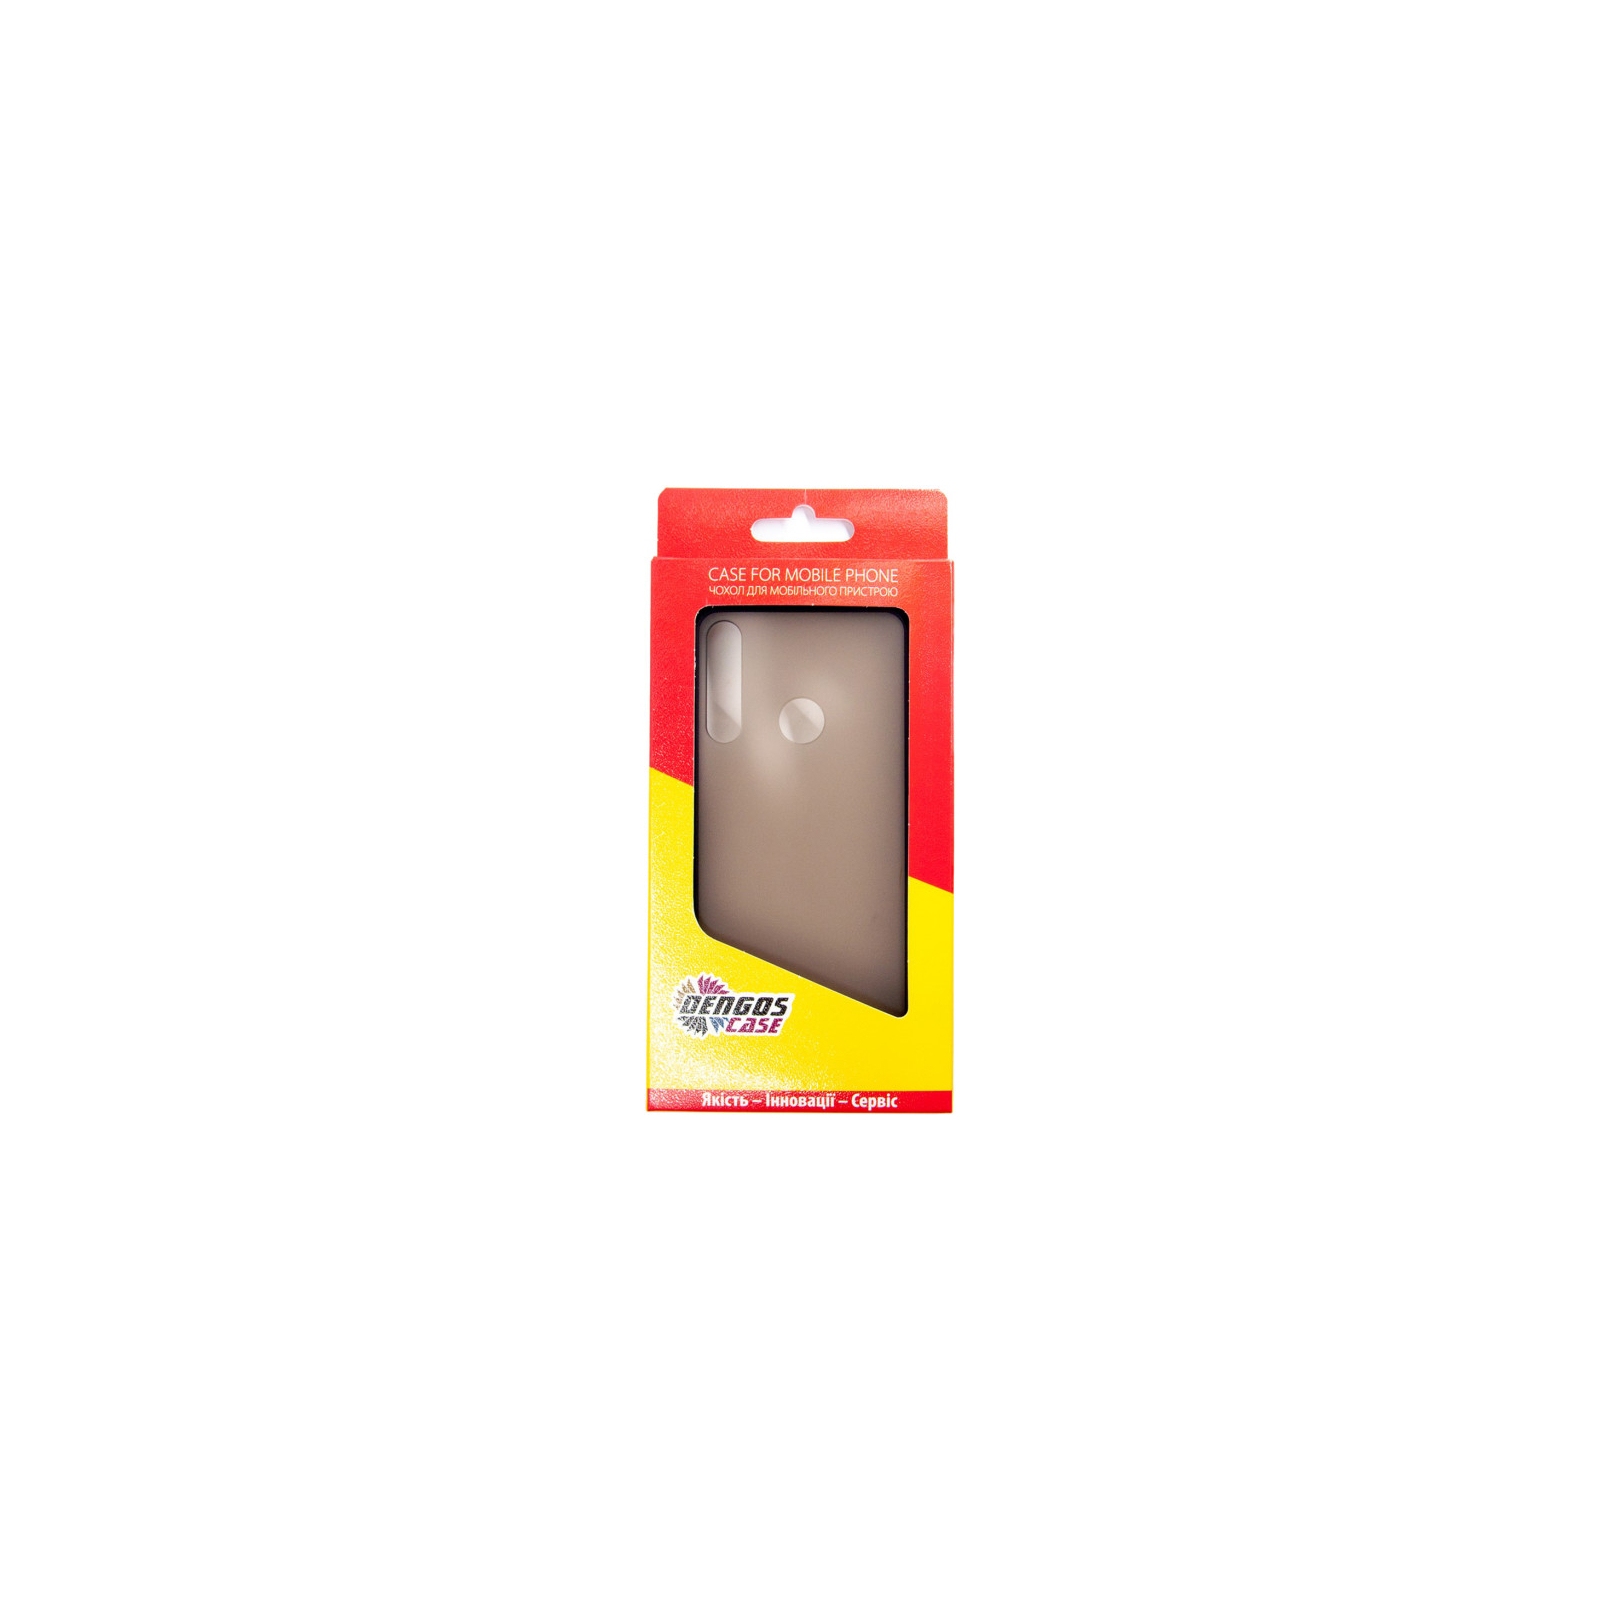 Чехол для мобильного телефона Dengos Matt Huawei Y6P, black (DG-TPU-MATT-54) (DG-TPU-MATT-54) изображение 4